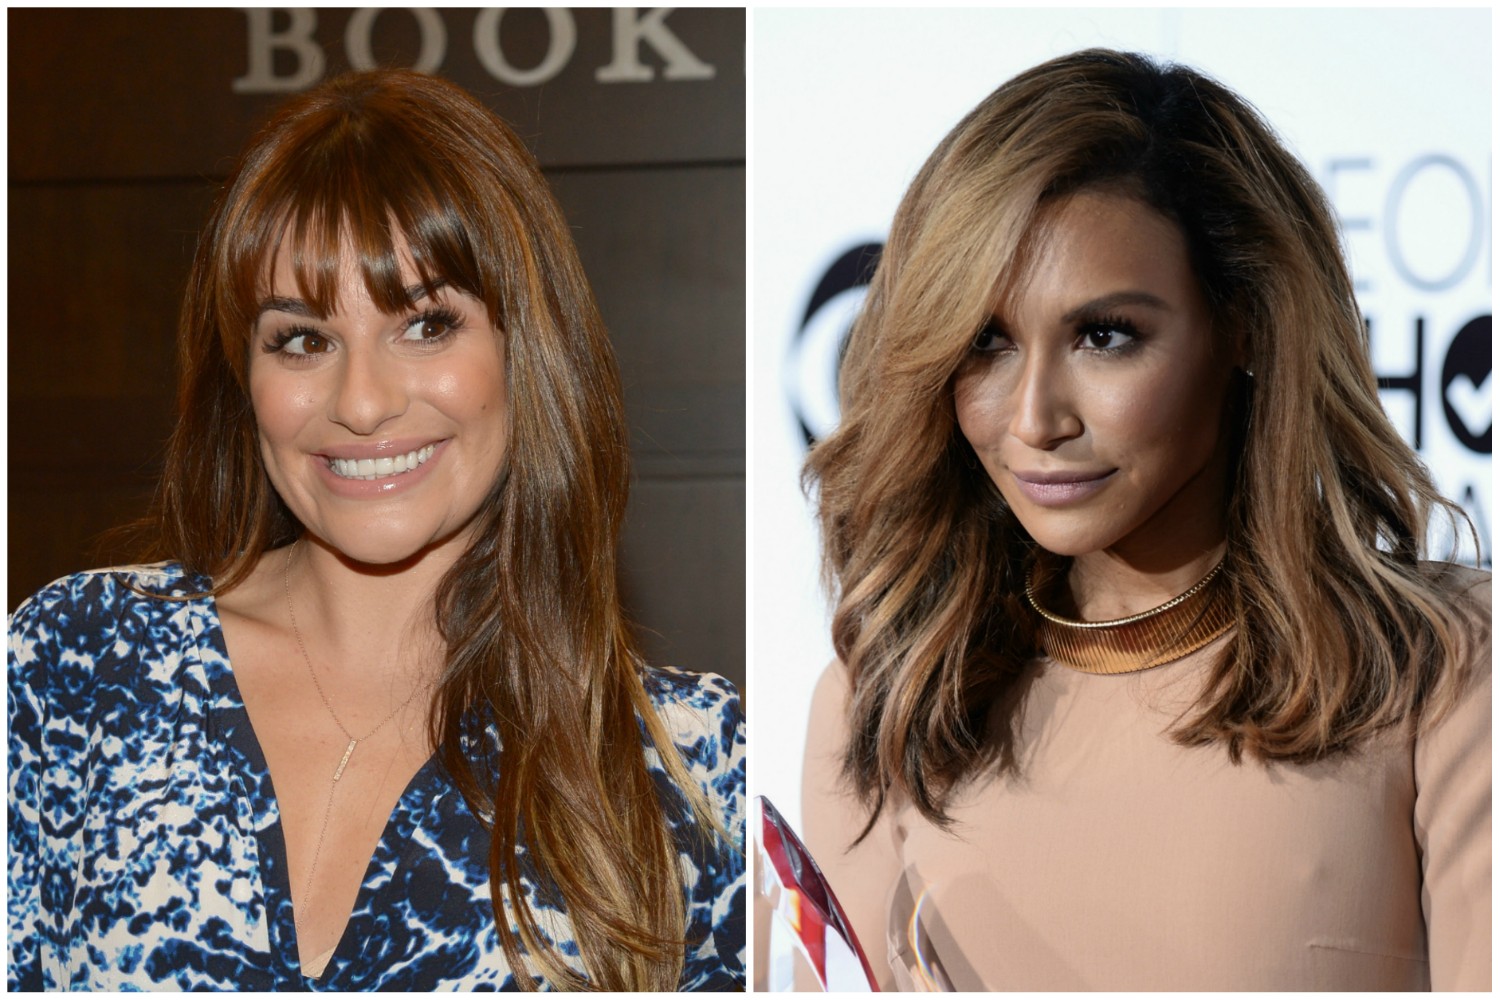 Colegas no seriado 'Glee', Lea Michele e Naya Rivera não se suportam. Várias fontes anônimas já confirmaram que ambas falam muito mal uma da outra pelas costas, a ponto de a irritação mútua chegar inclusive ao set. (Foto: Getty Images)